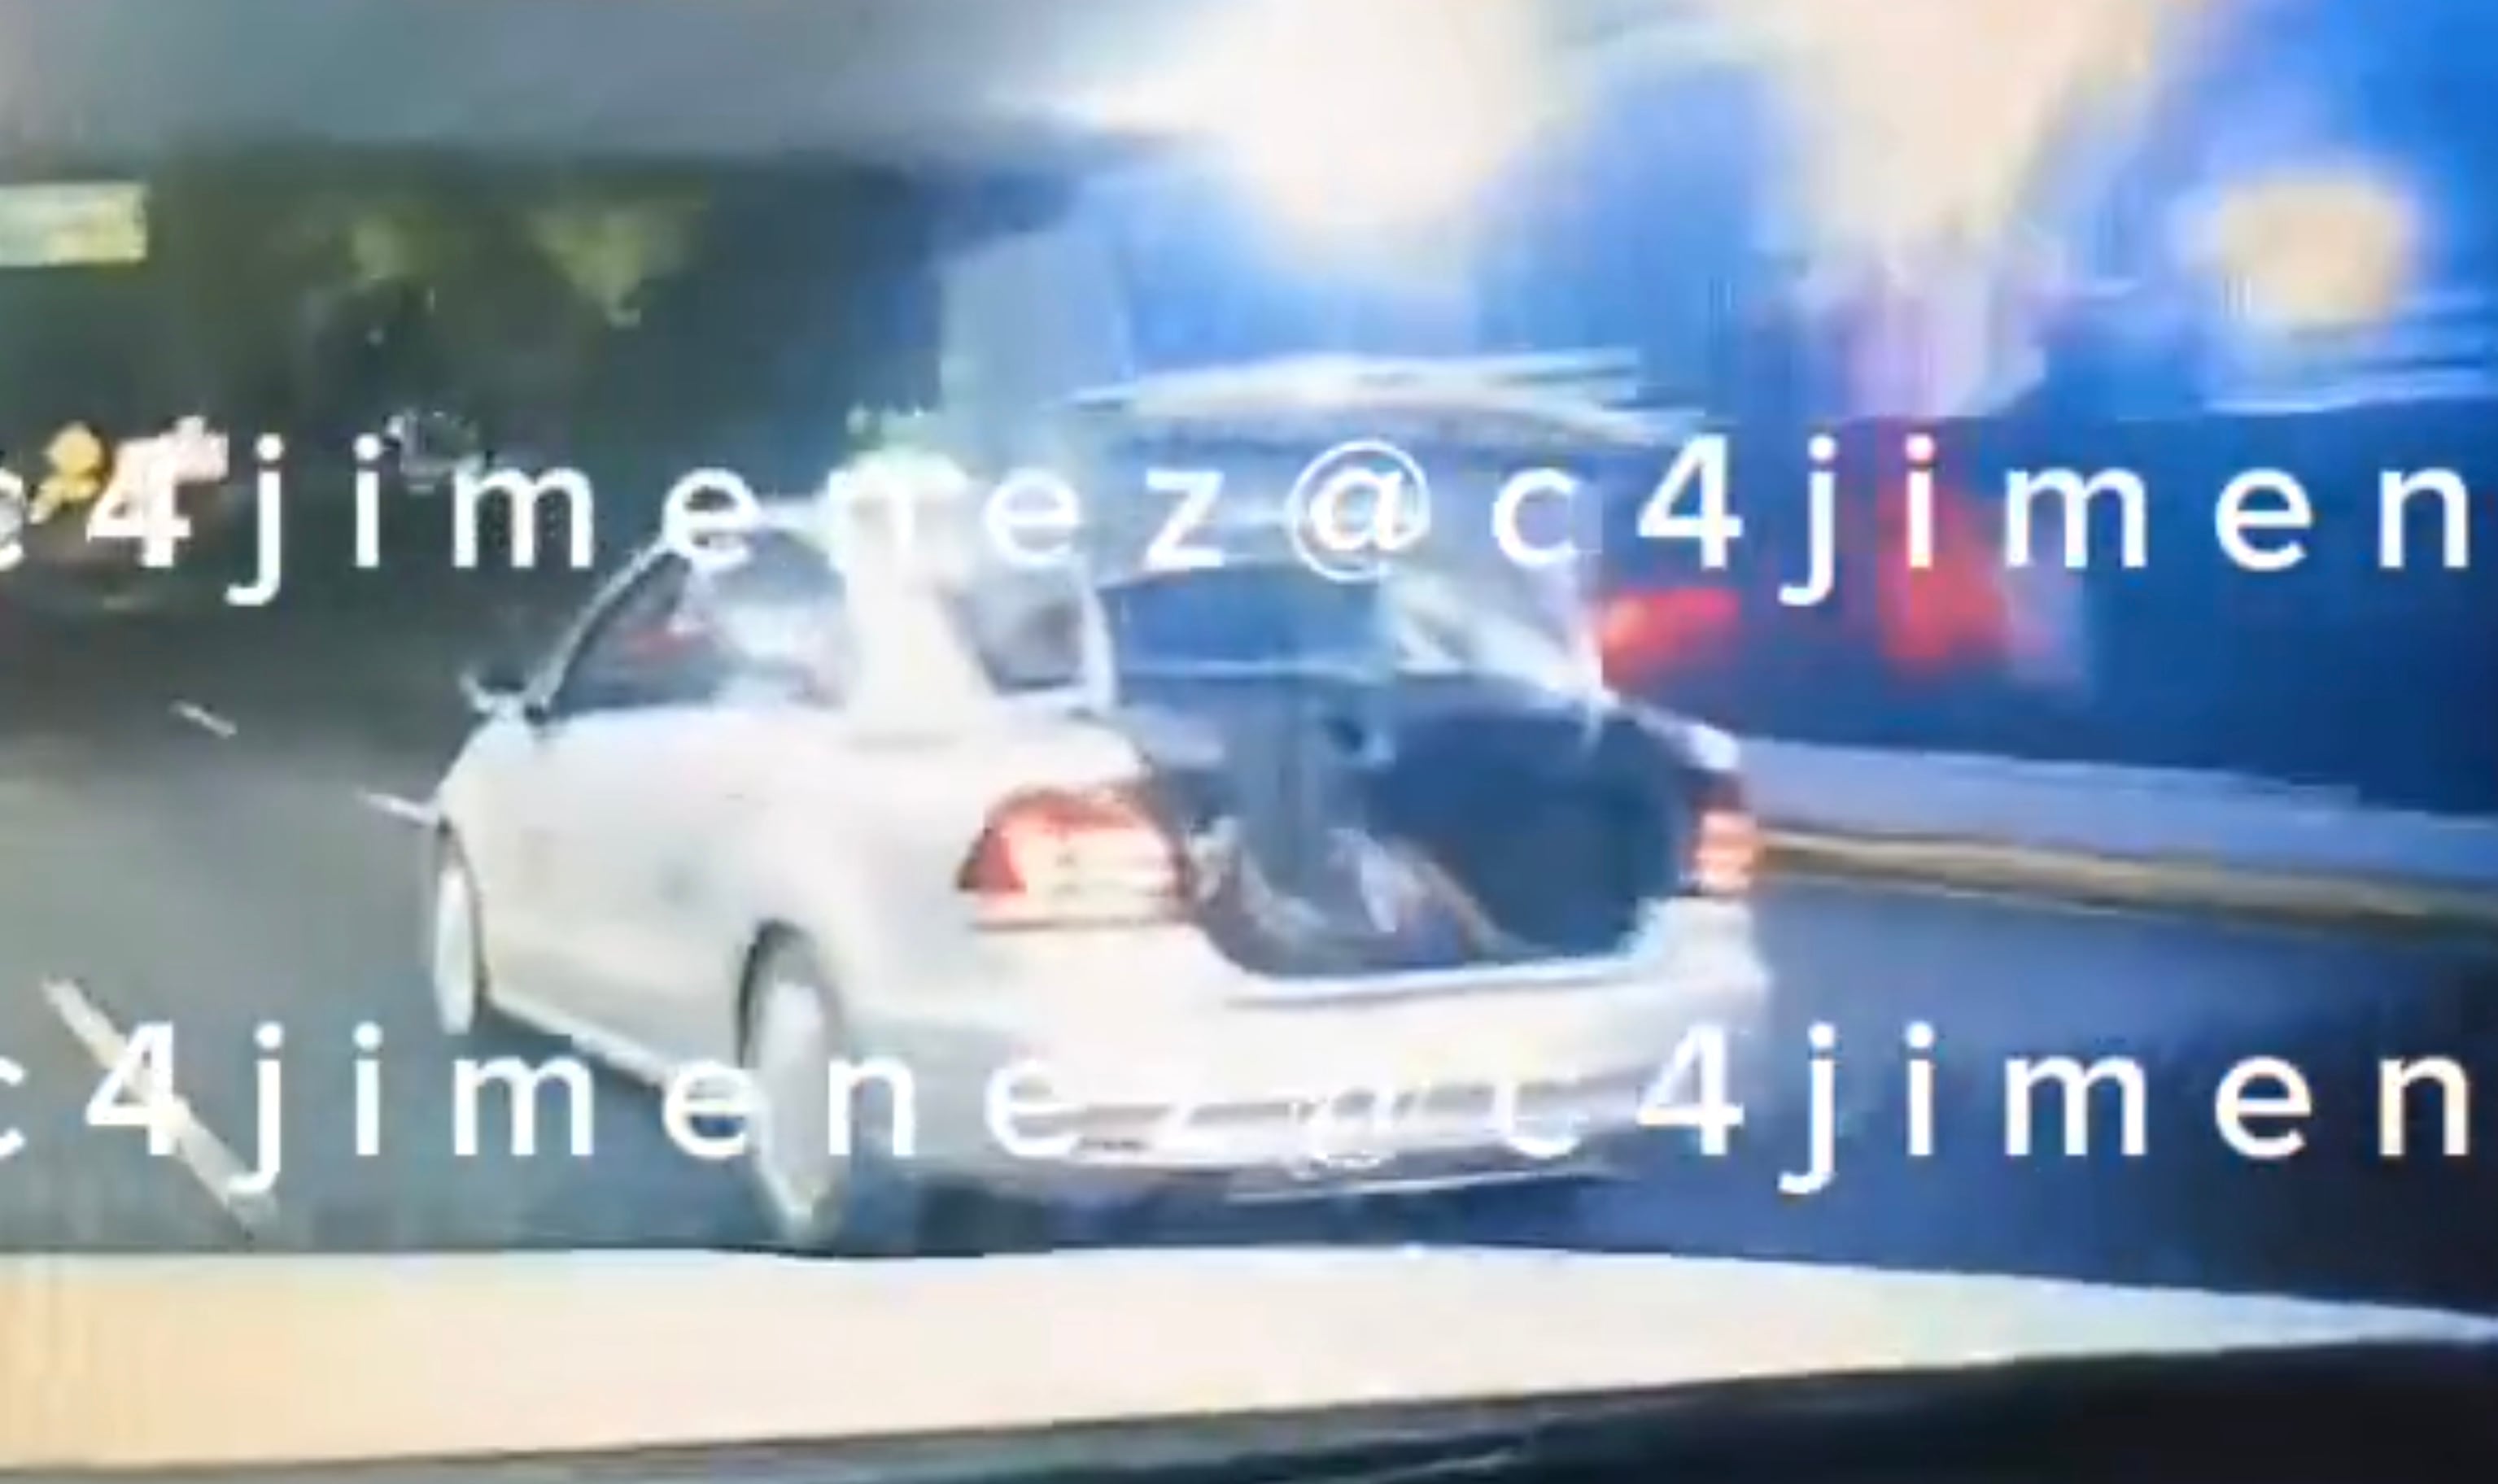 Captan en video un presunto secuestro en Viaducto, CDMX